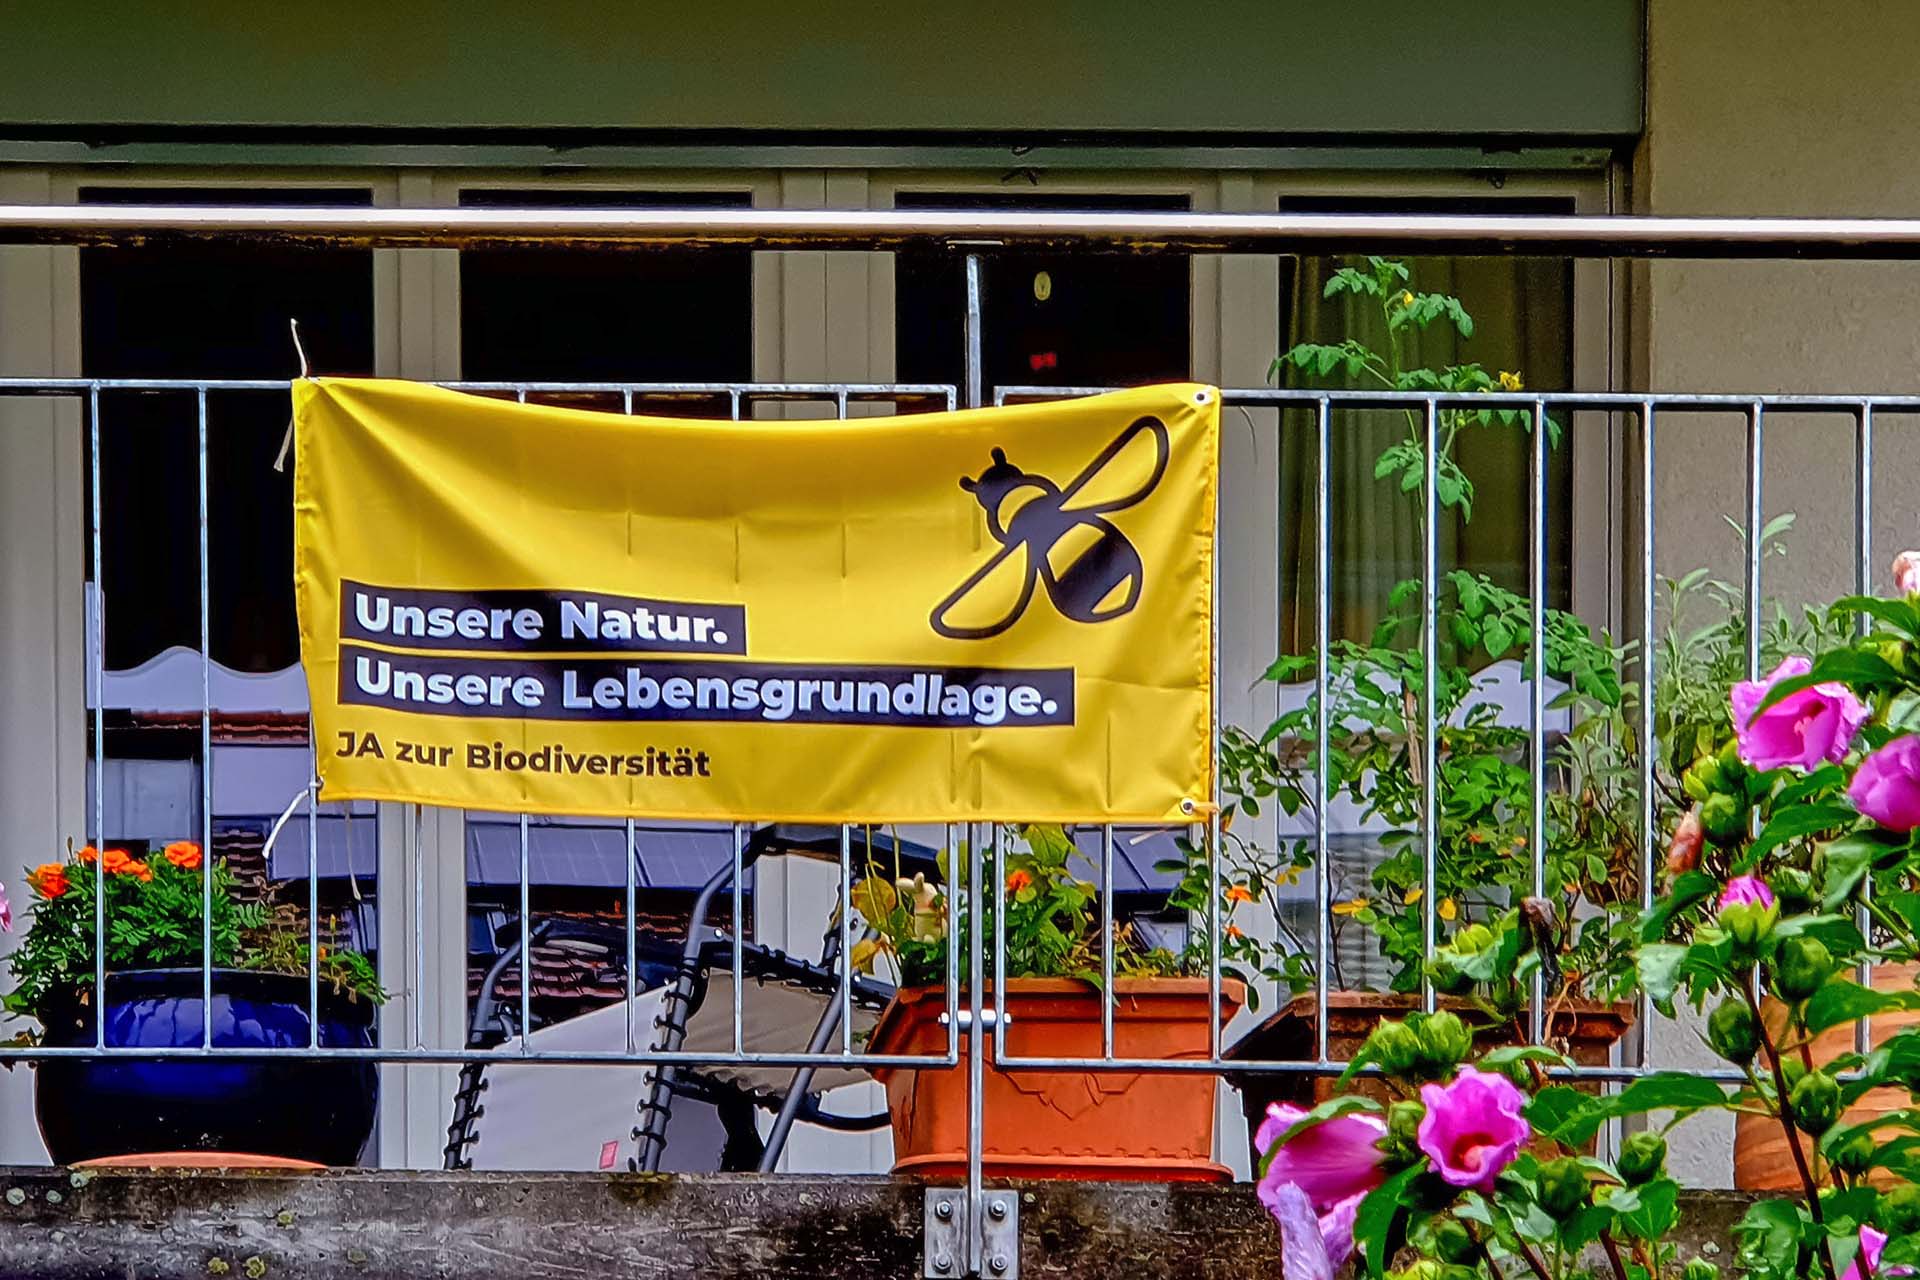 Ein Plakat zur Initiative für mehr Biodiversität: "Ja zur Biodiversität" auf einem Schweizer Balkon im Sommer, Aussenansicht. Foto: Jacqueline Cortesi, 2023